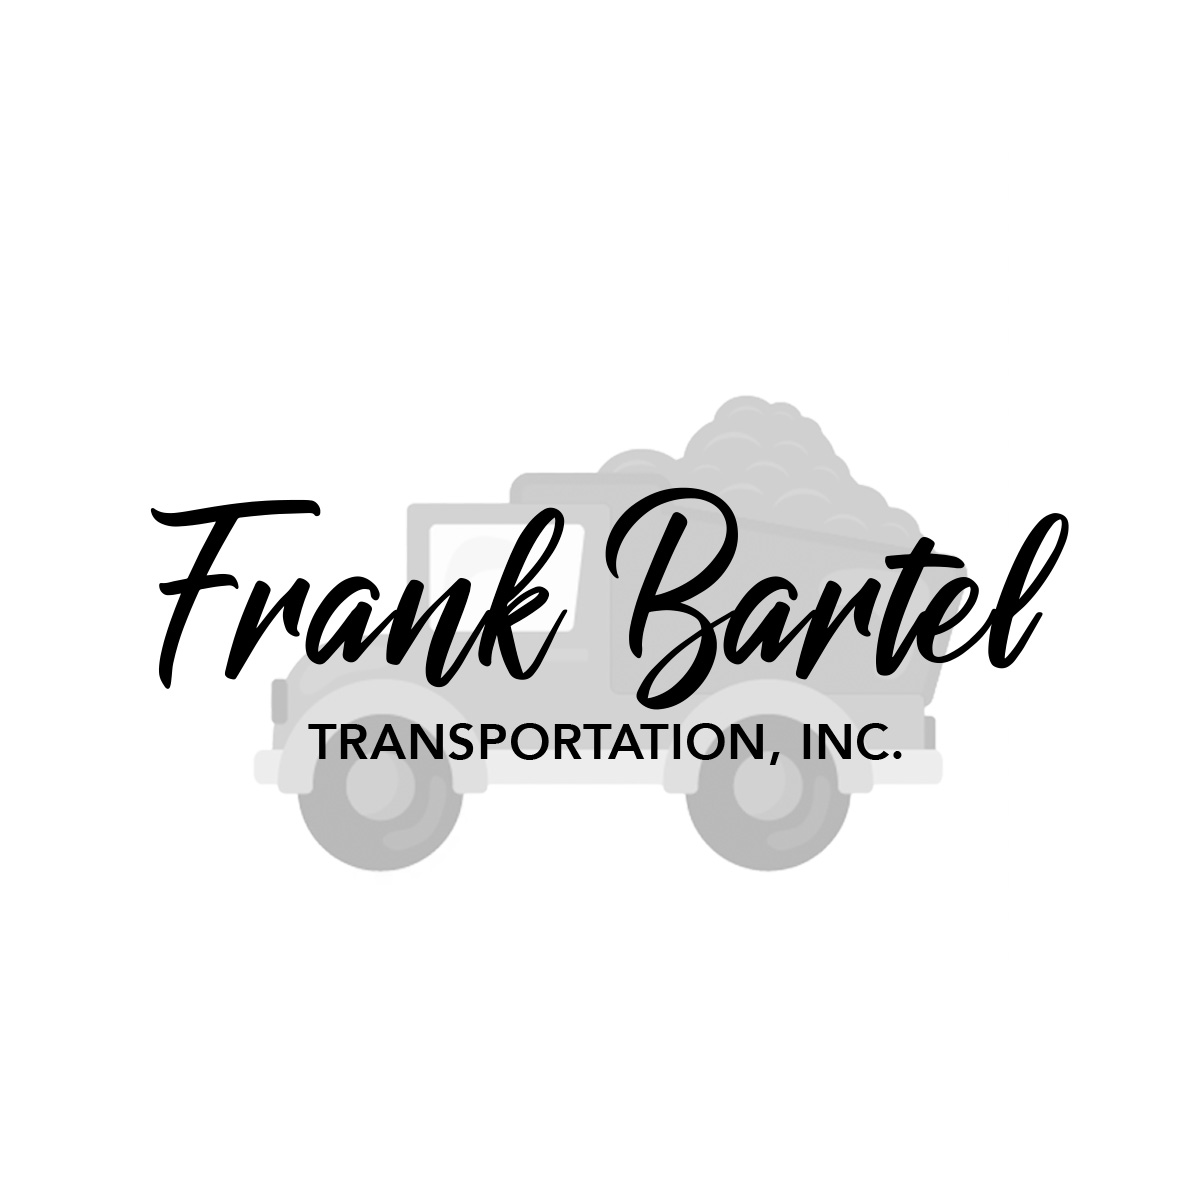 Bartel Transportation